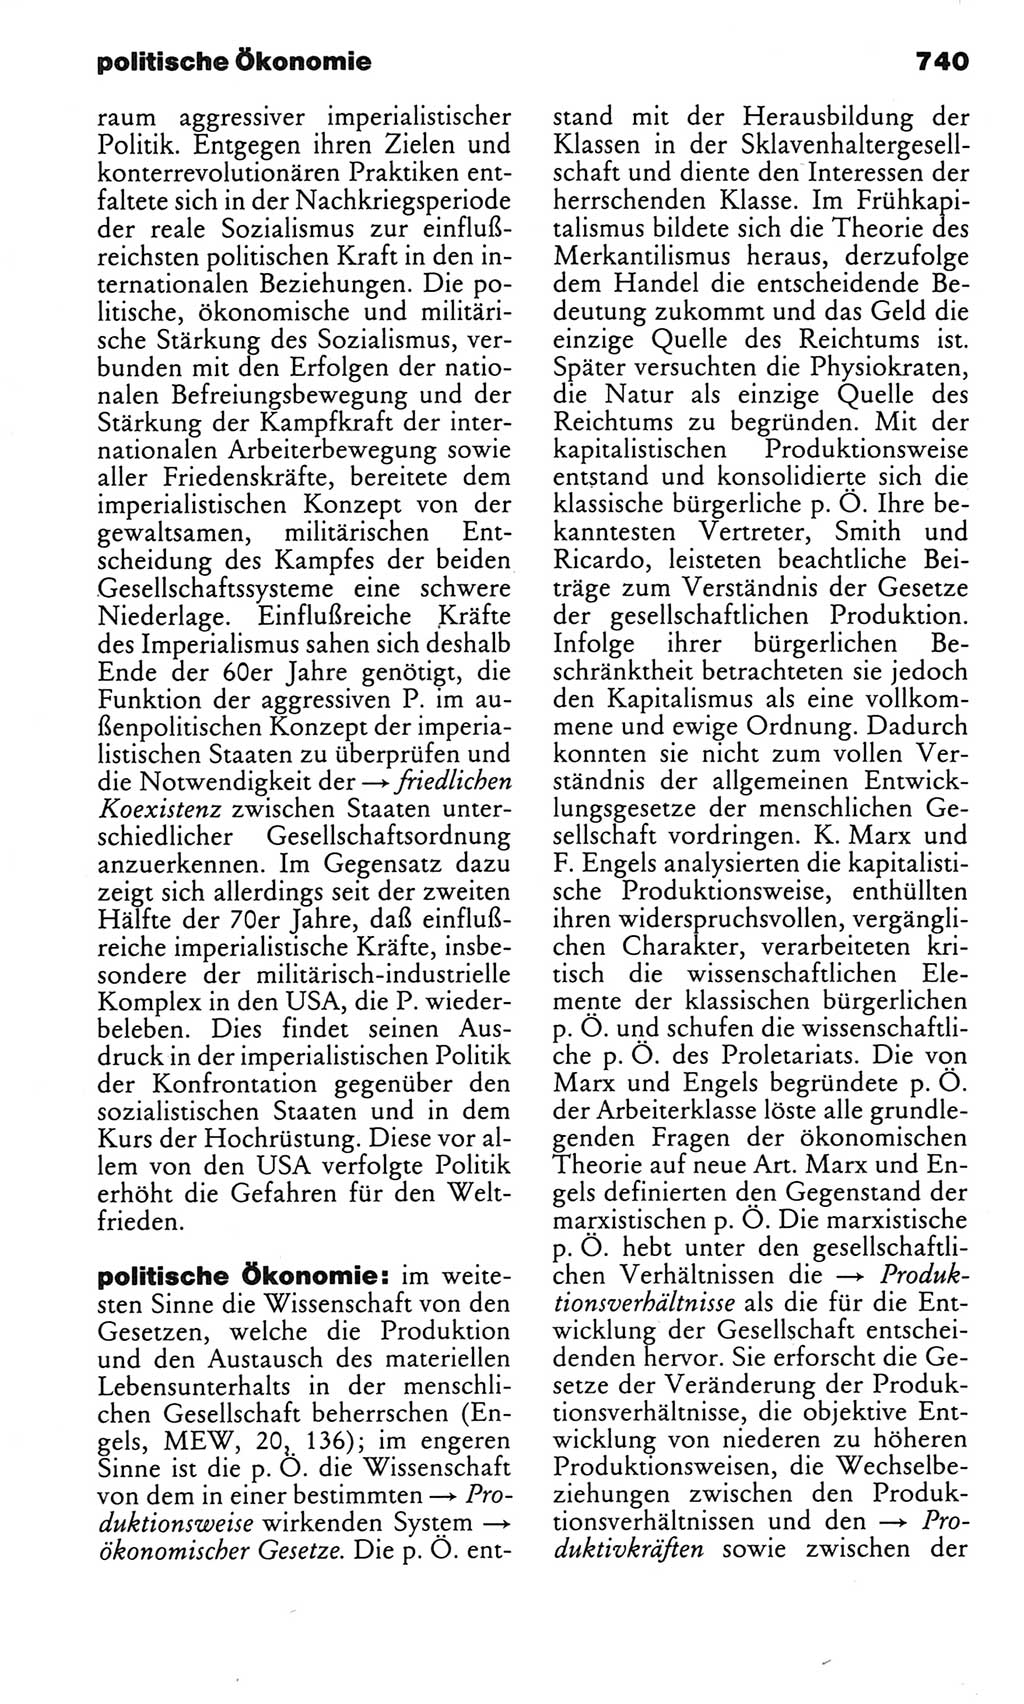 Kleines politisches Wörterbuch [Deutsche Demokratische Republik (DDR)] 1983, Seite 740 (Kl. pol. Wb. DDR 1983, S. 740)